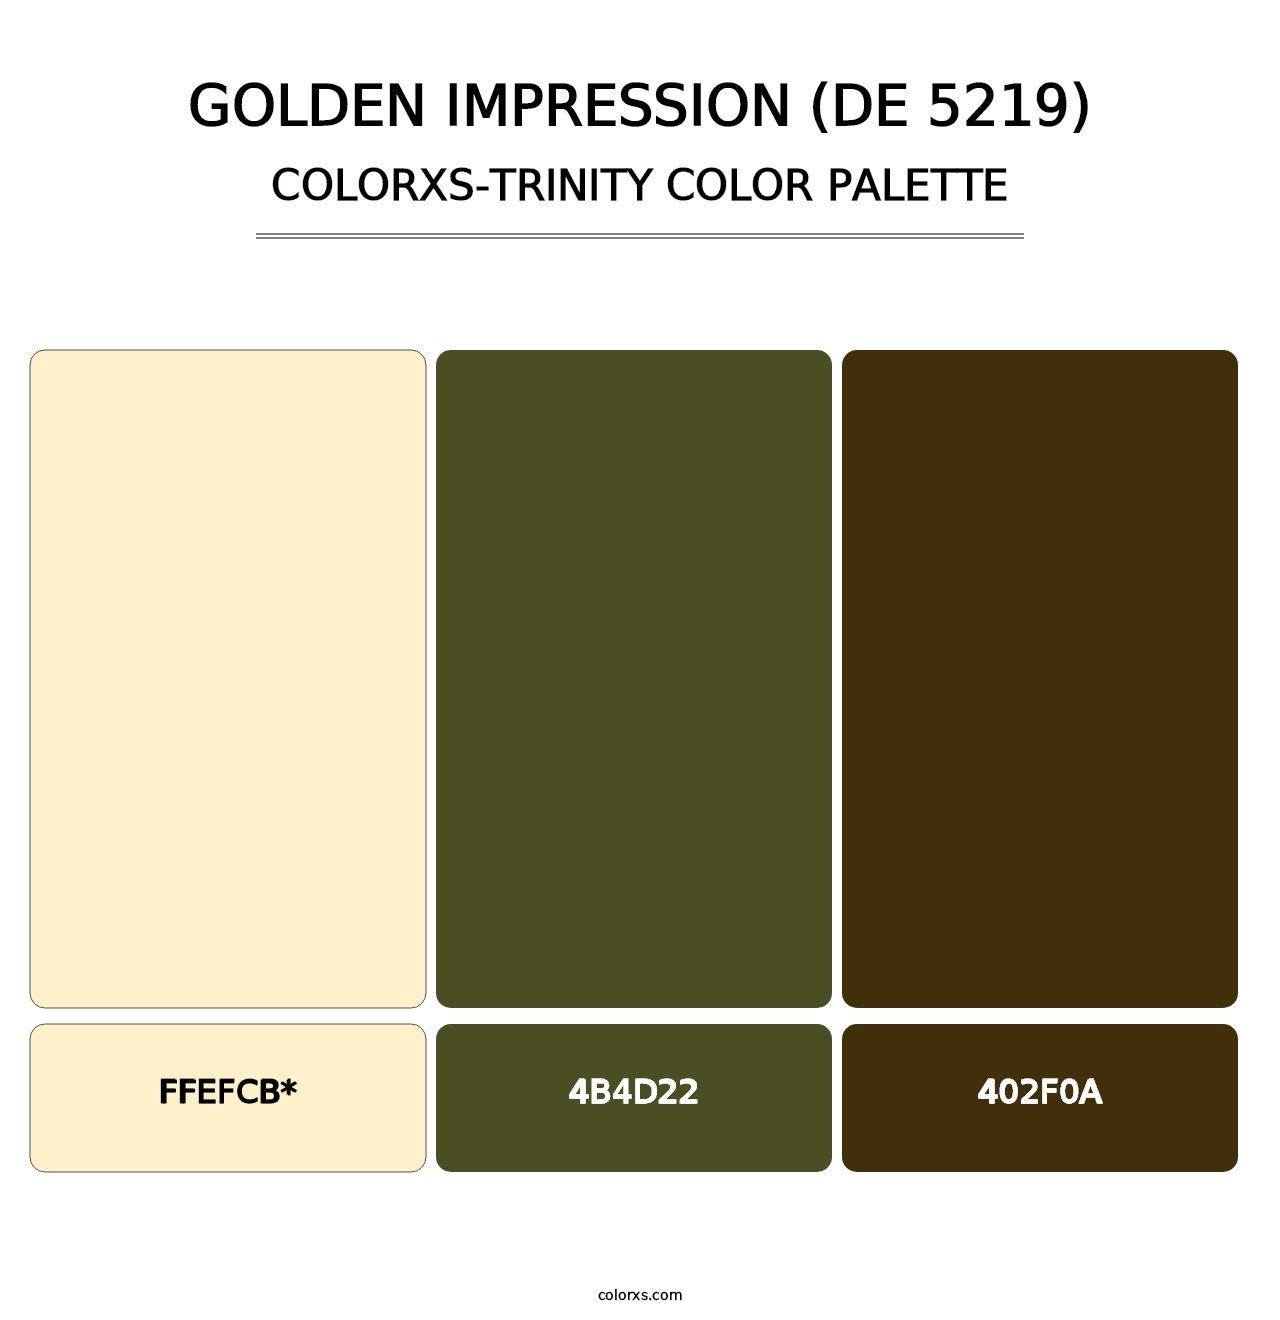 Golden Impression (DE 5219) - Colorxs Trinity Palette